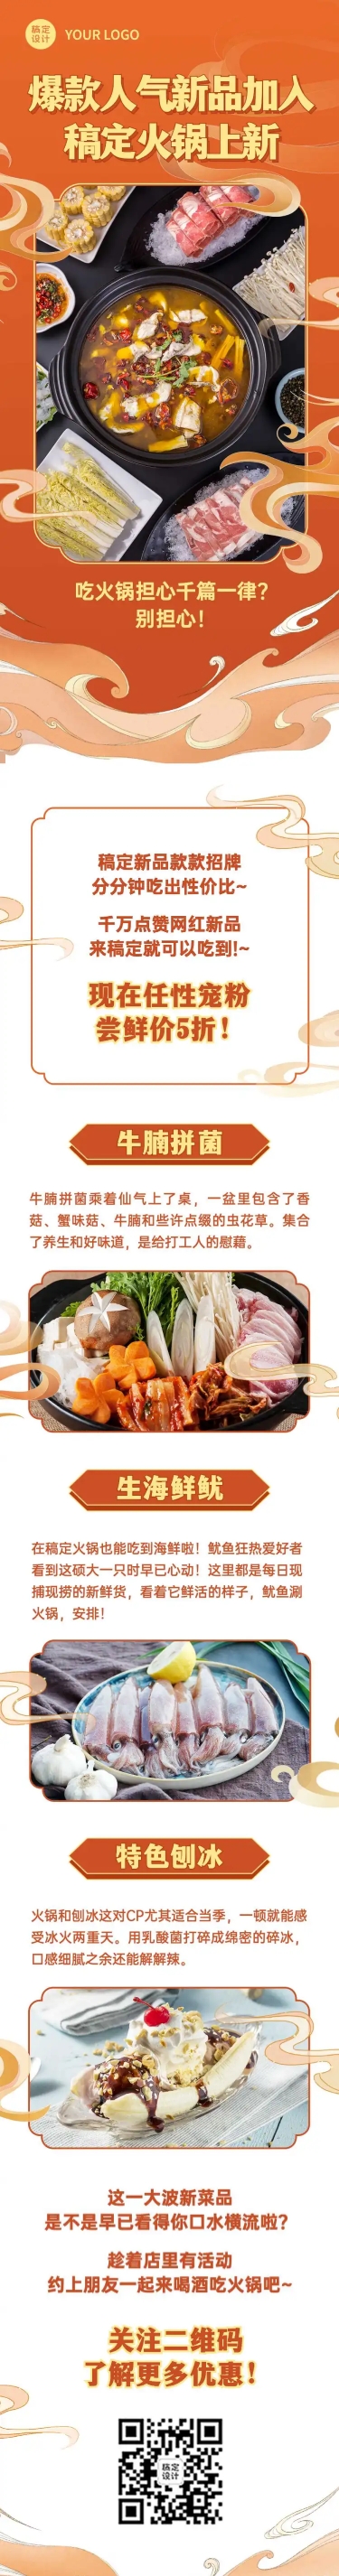 餐饮美食产品营销喜庆文章长图预览效果